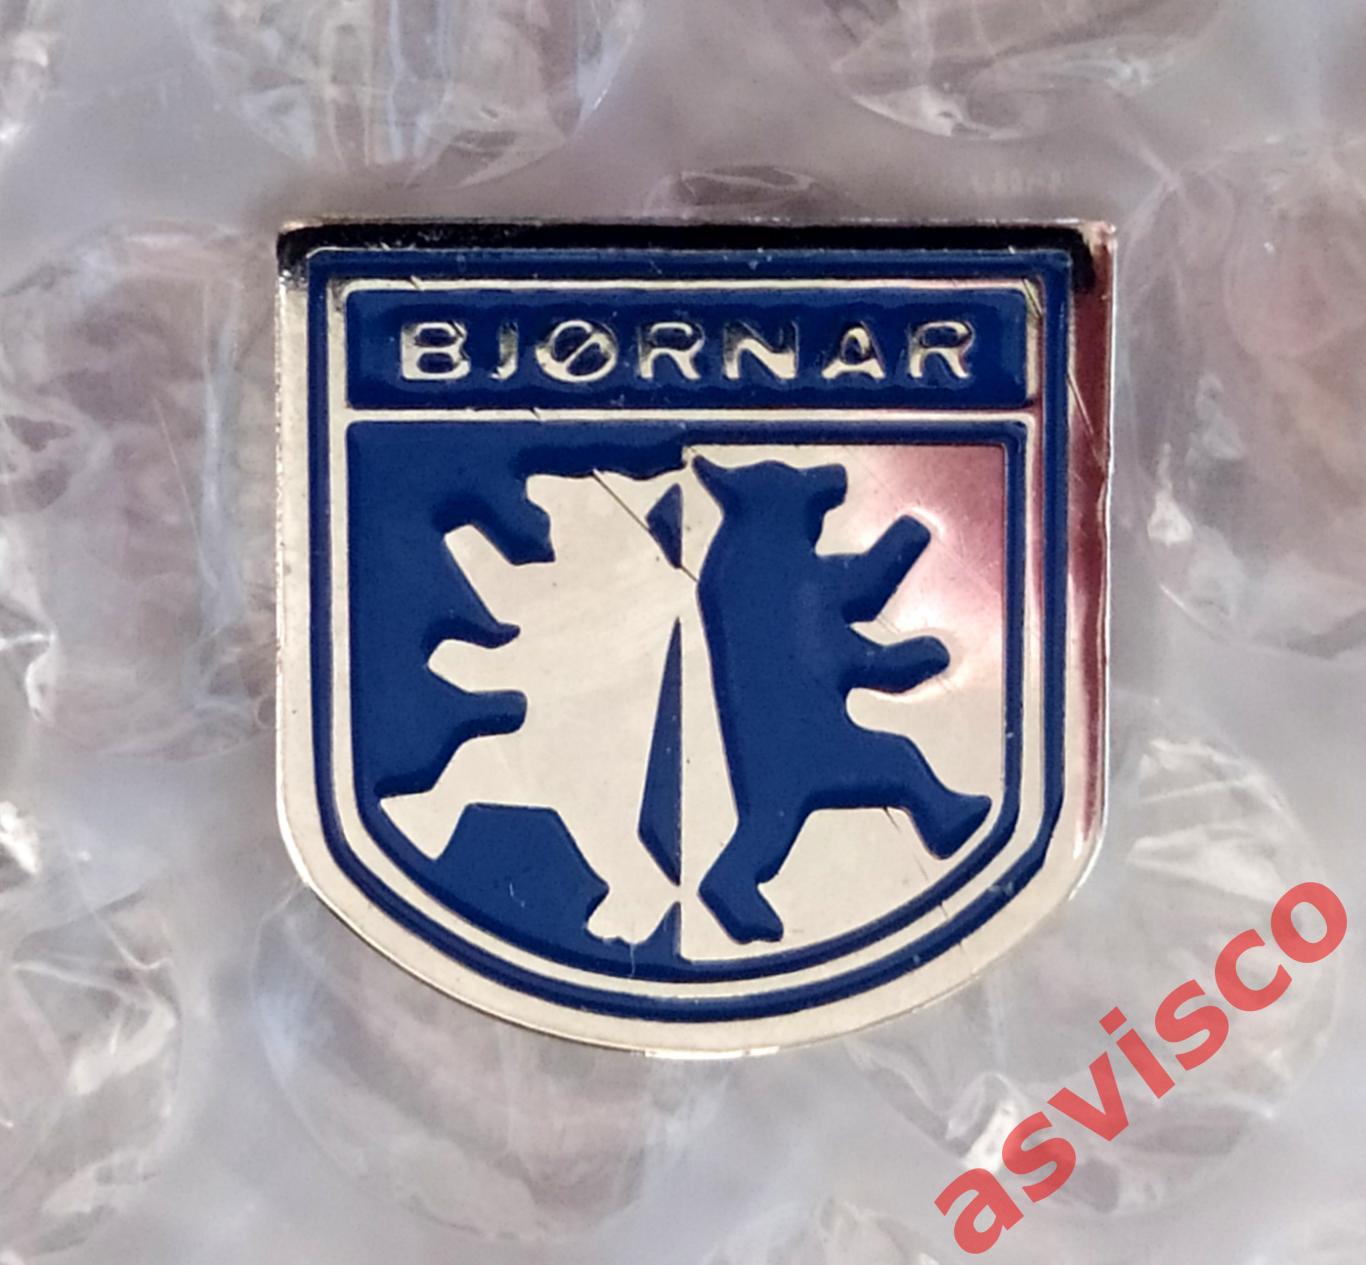 Значок Гандбольный Клуб BJORNAR Handball / Бьорнар из Бергена / Норвегия. 4